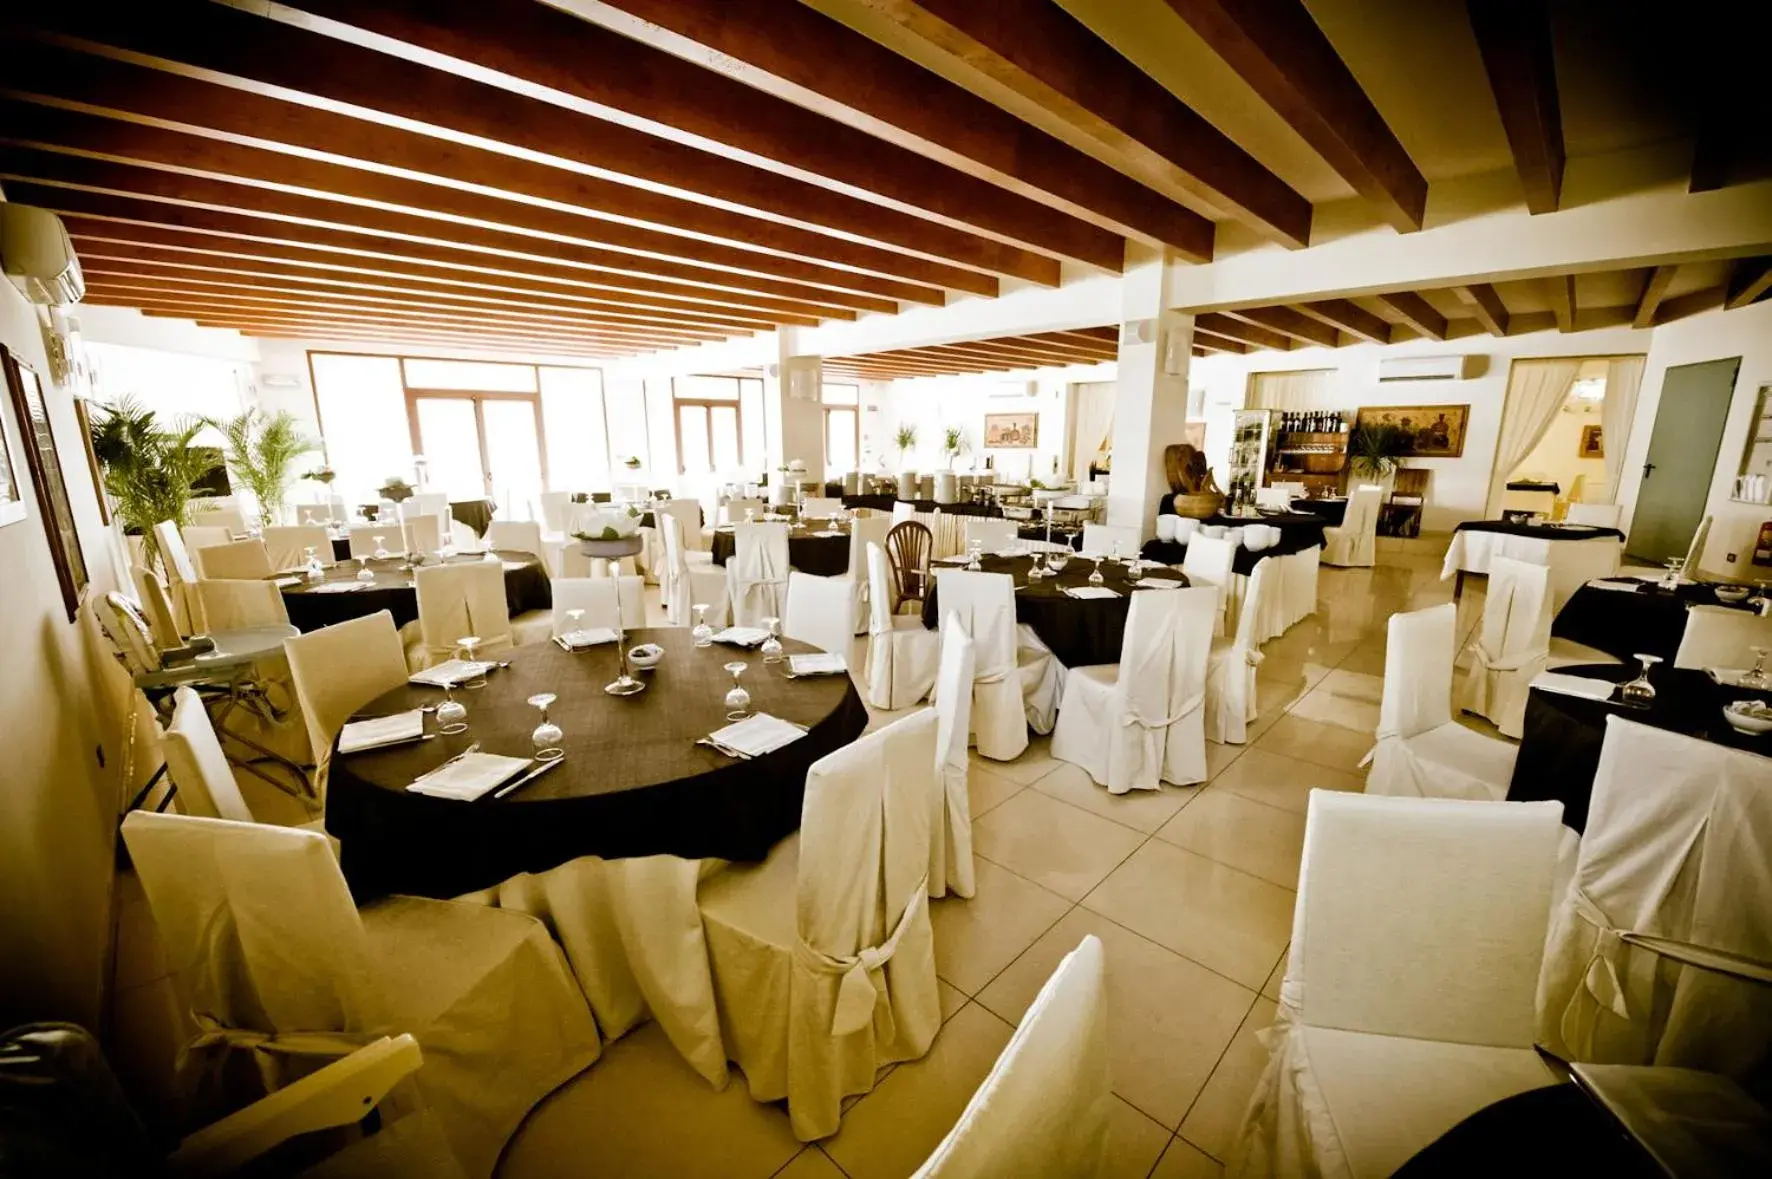 Banquet/Function facilities, Banquet Facilities in Ticho's